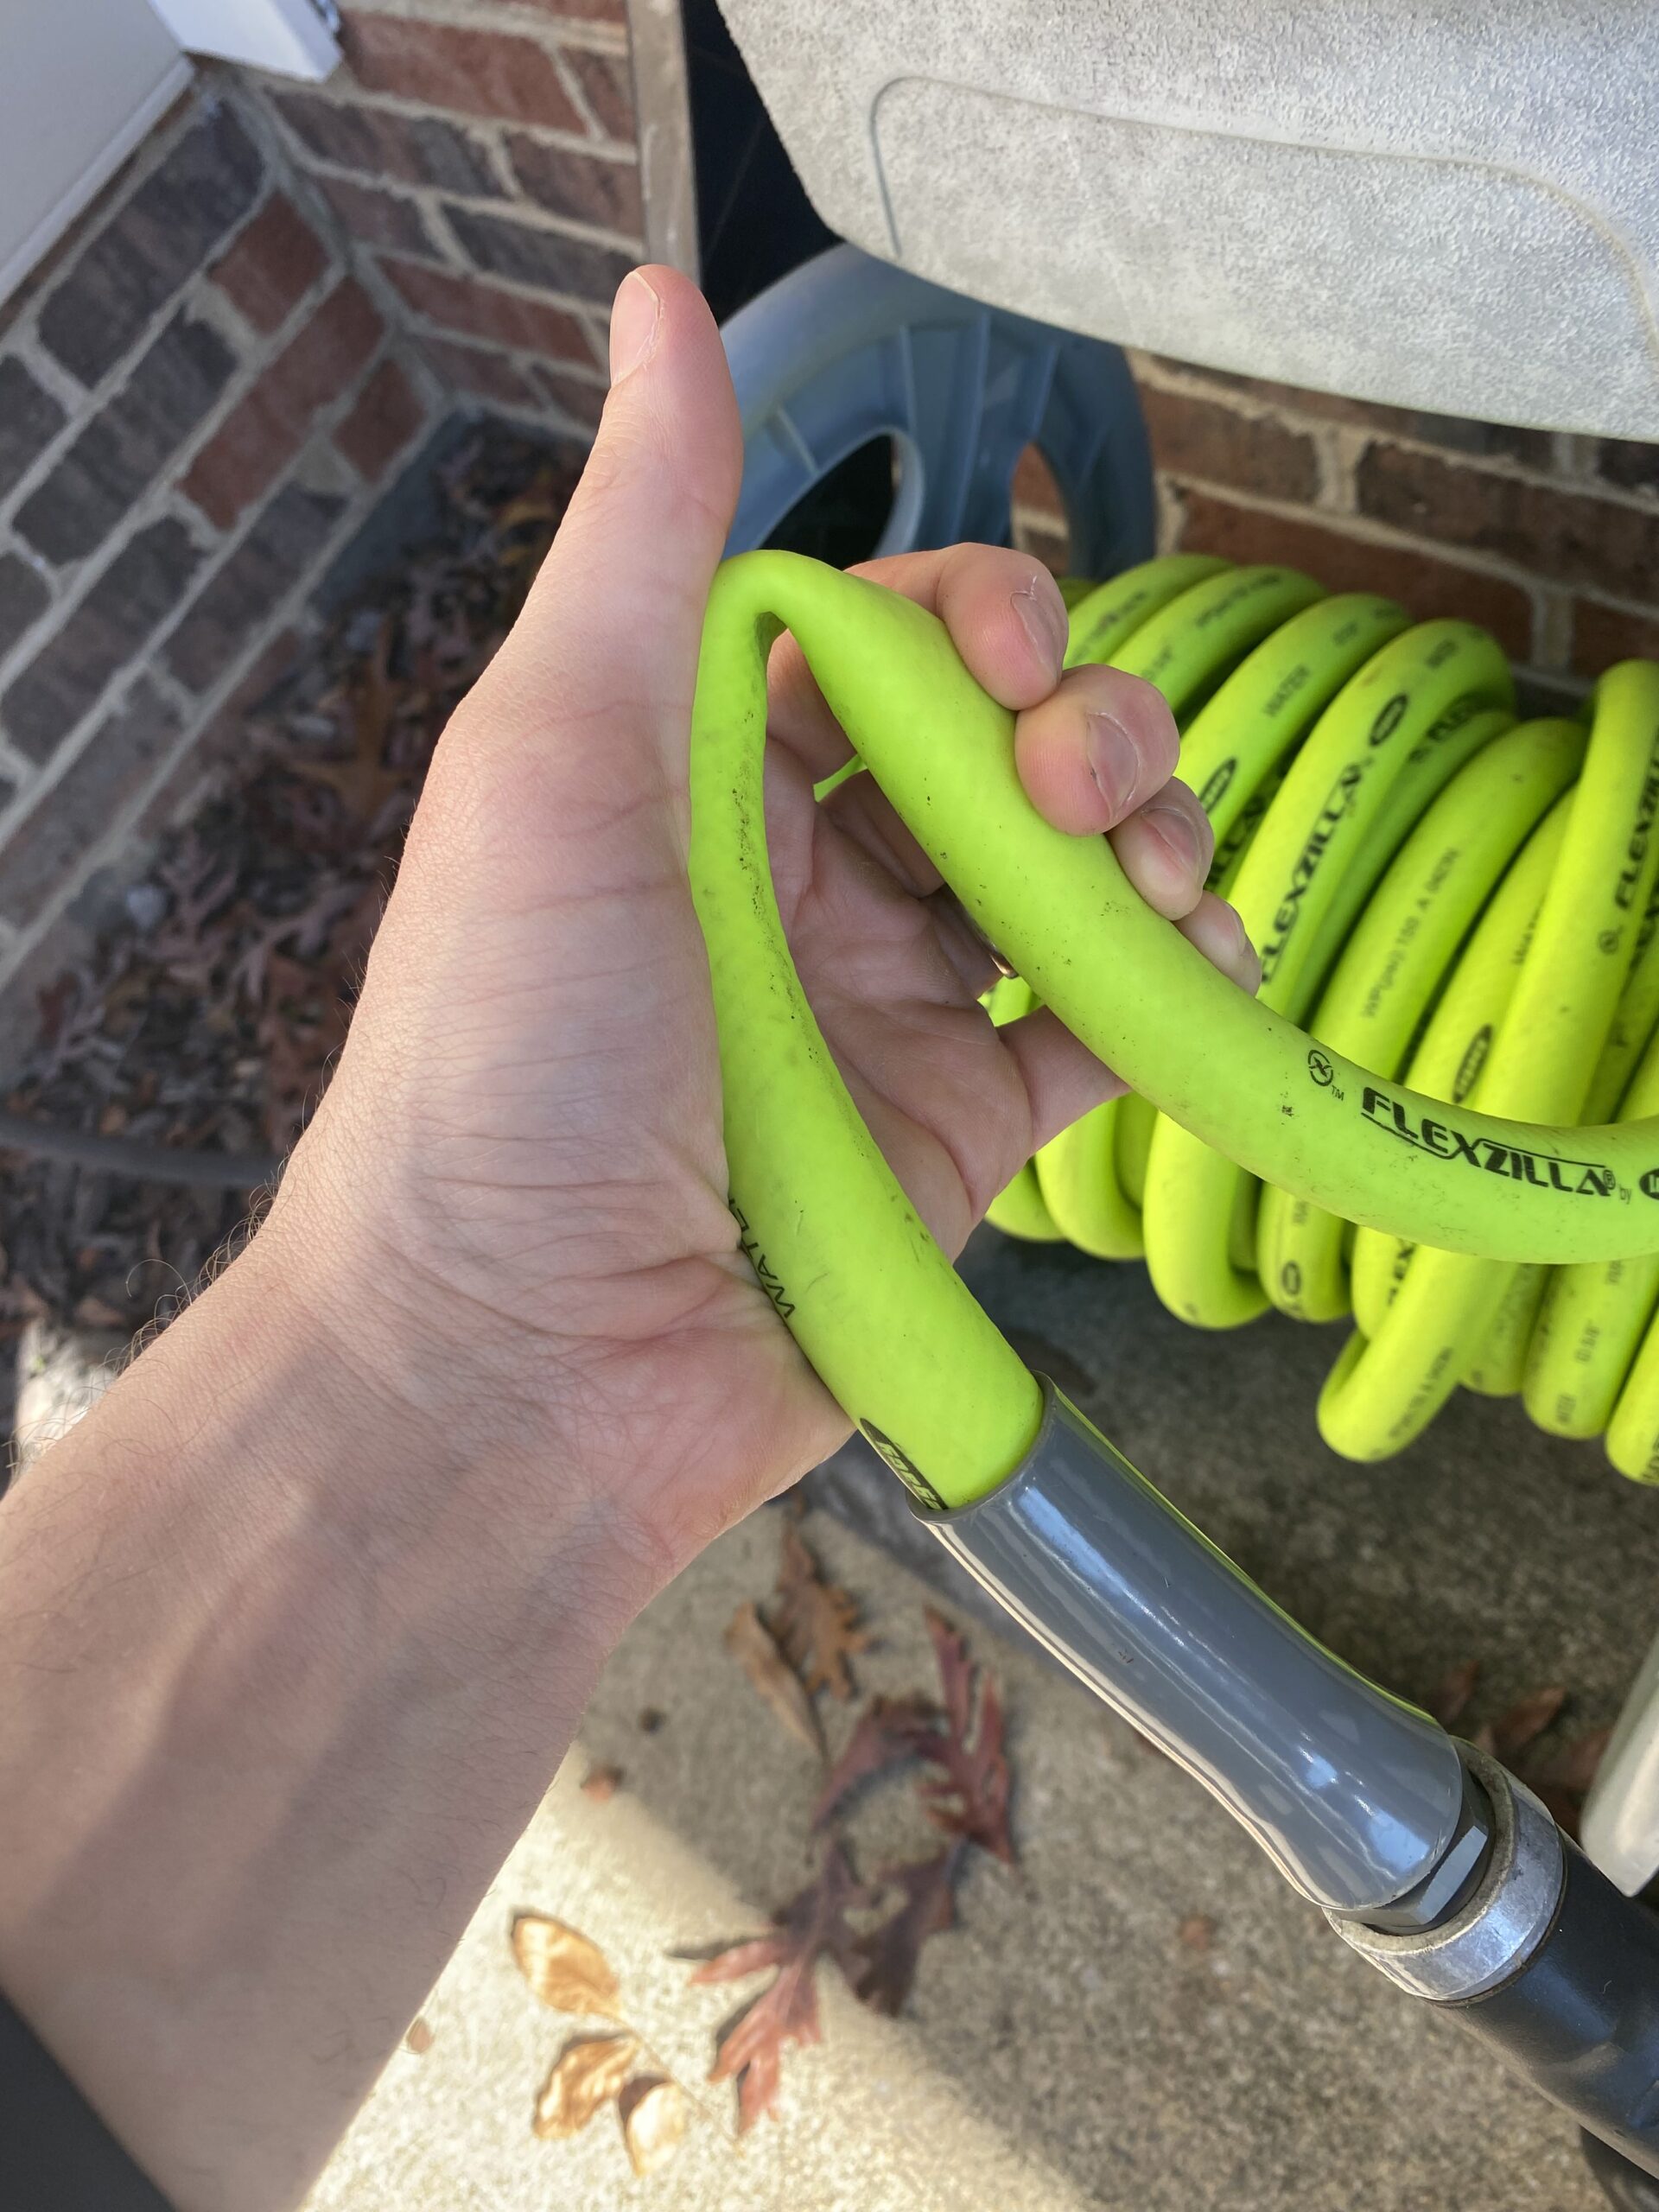 bending the flexzilla garden hose